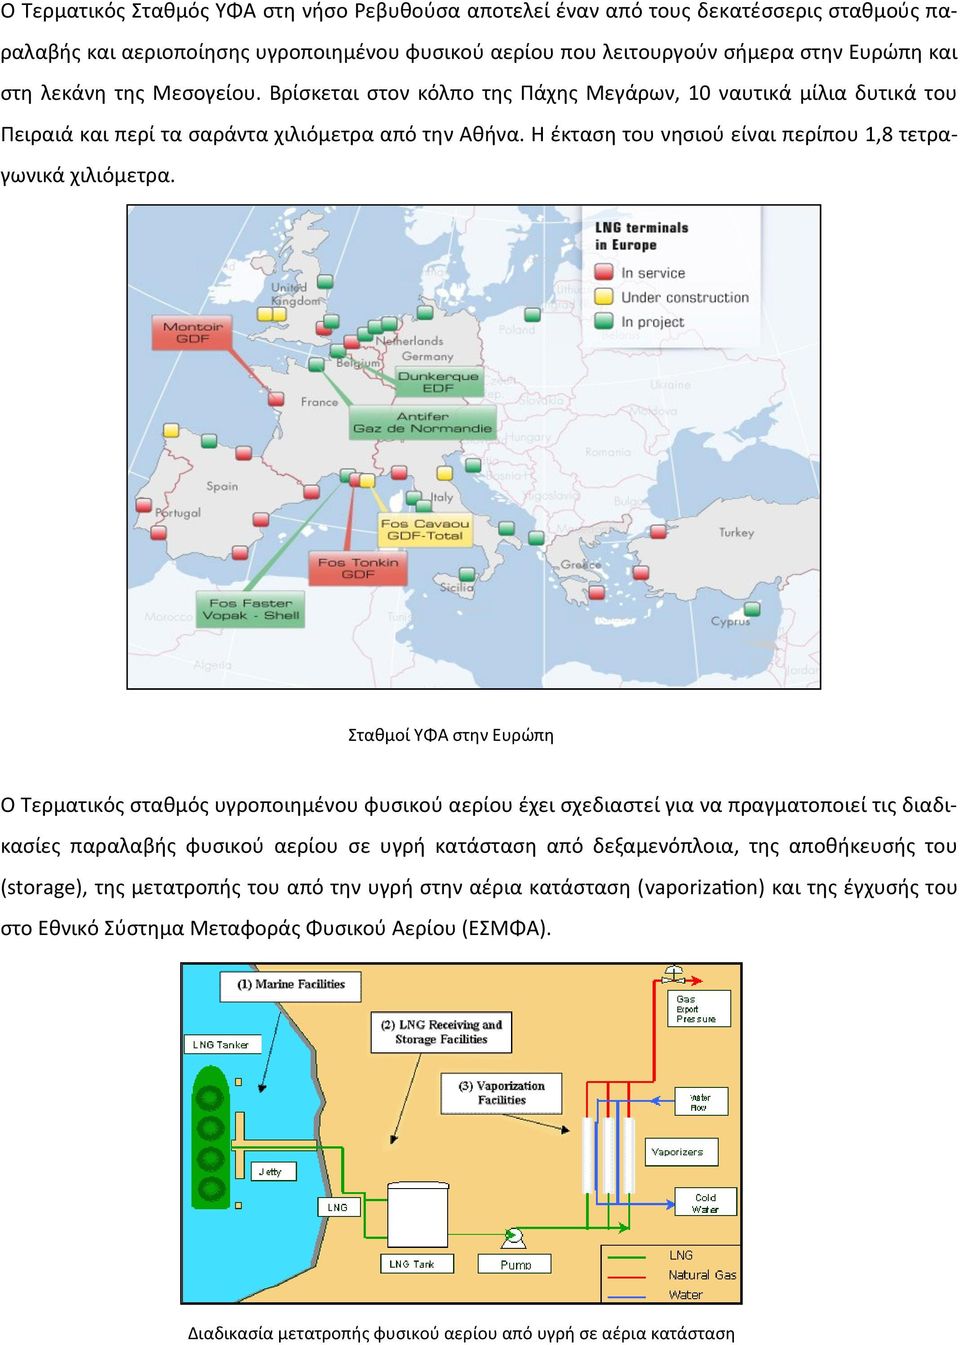 Σταθμοί ΥΦΑ στην Ευρώπη Ο Τερματικός σταθμός υγροποιημένου φυσικού αερίου έχει σχεδιαστεί για να πραγματοποιεί τις διαδικασίες παραλαβής φυσικού αερίου σε υγρή κατάσταση από δεξαμενόπλοια, της